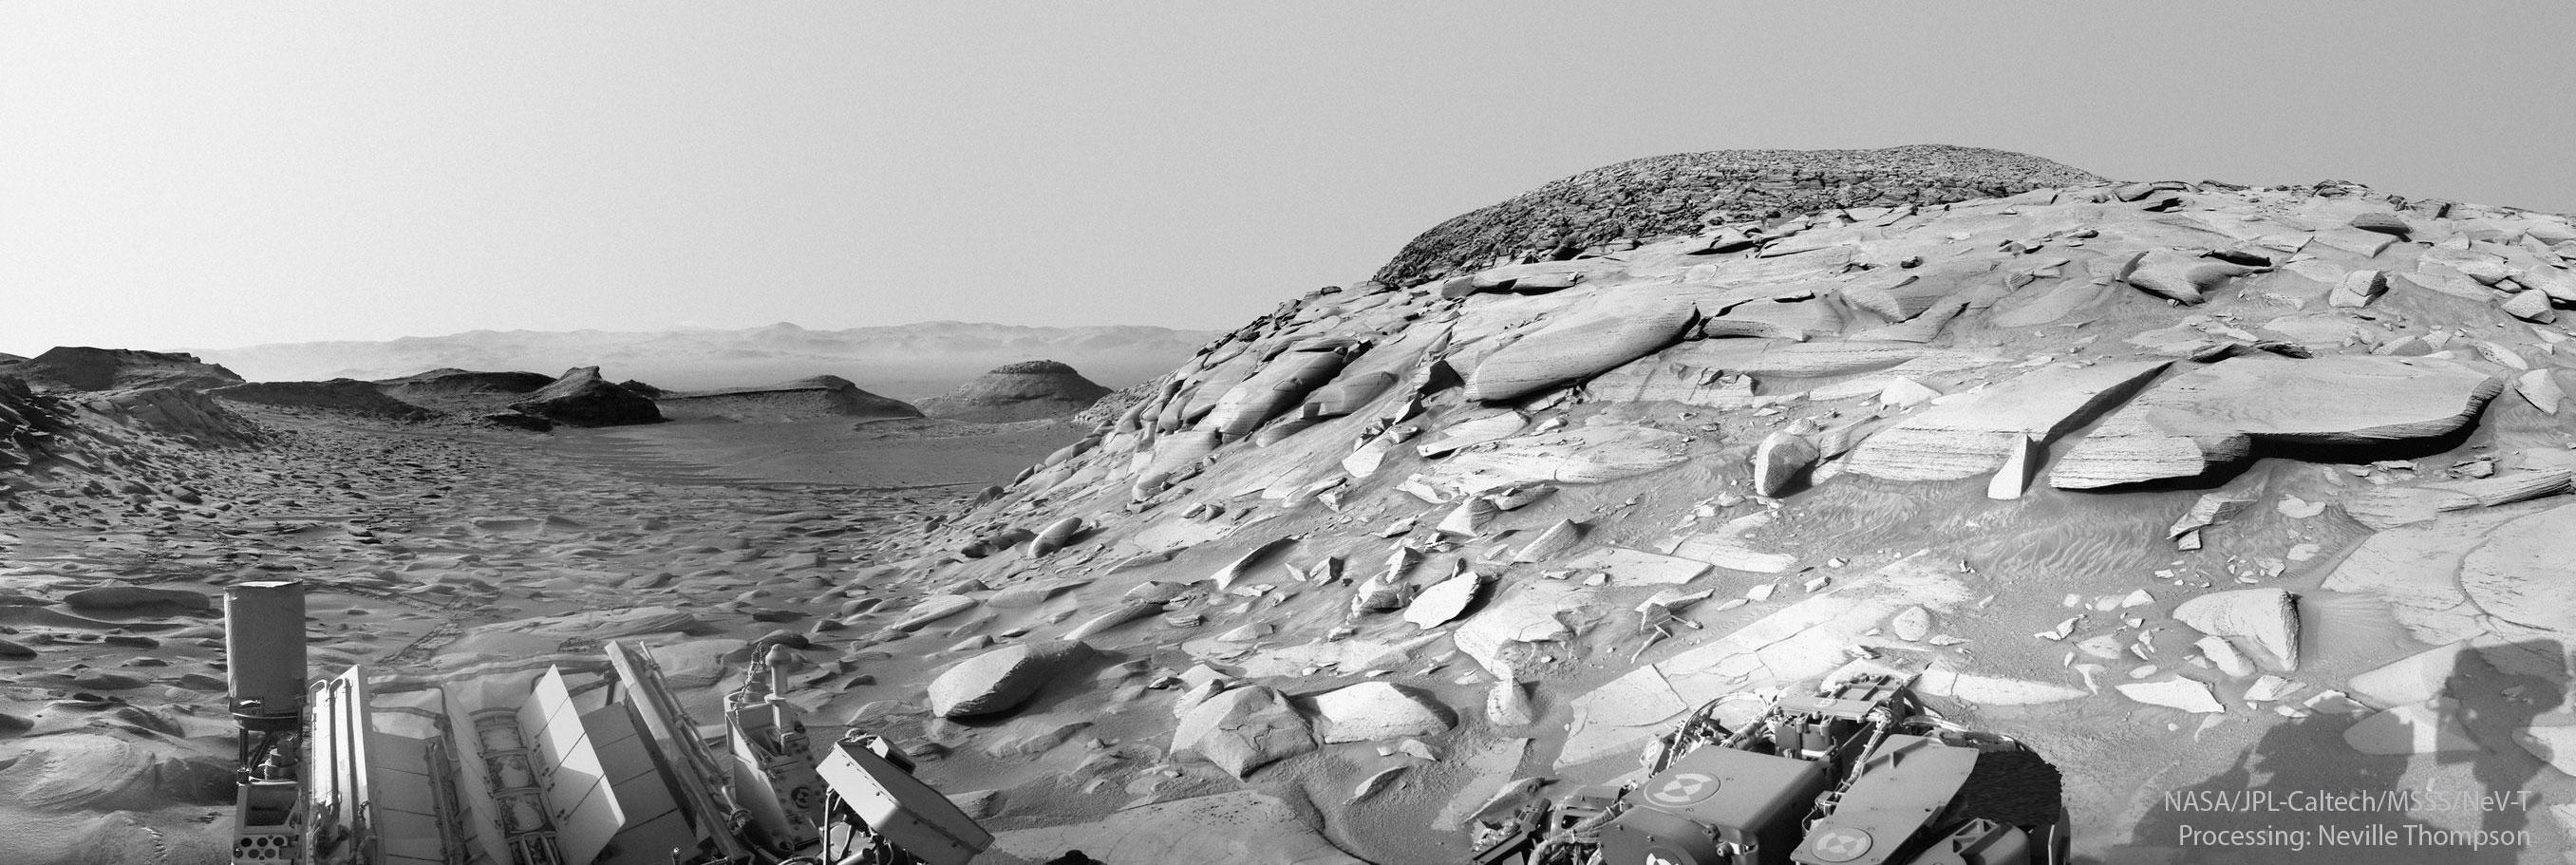 مشهدٌ مُصوّر بالأبيض والأسود للمرّيخ من عربة "الفضول" الجوّالة على المرّيخ. تظهر العديد من الصخور والتلال، مع ظهور تلّة يميناً تحتوي على العديد من الصخور المُسطّحة على نحوٍ غير اعتياديّ.